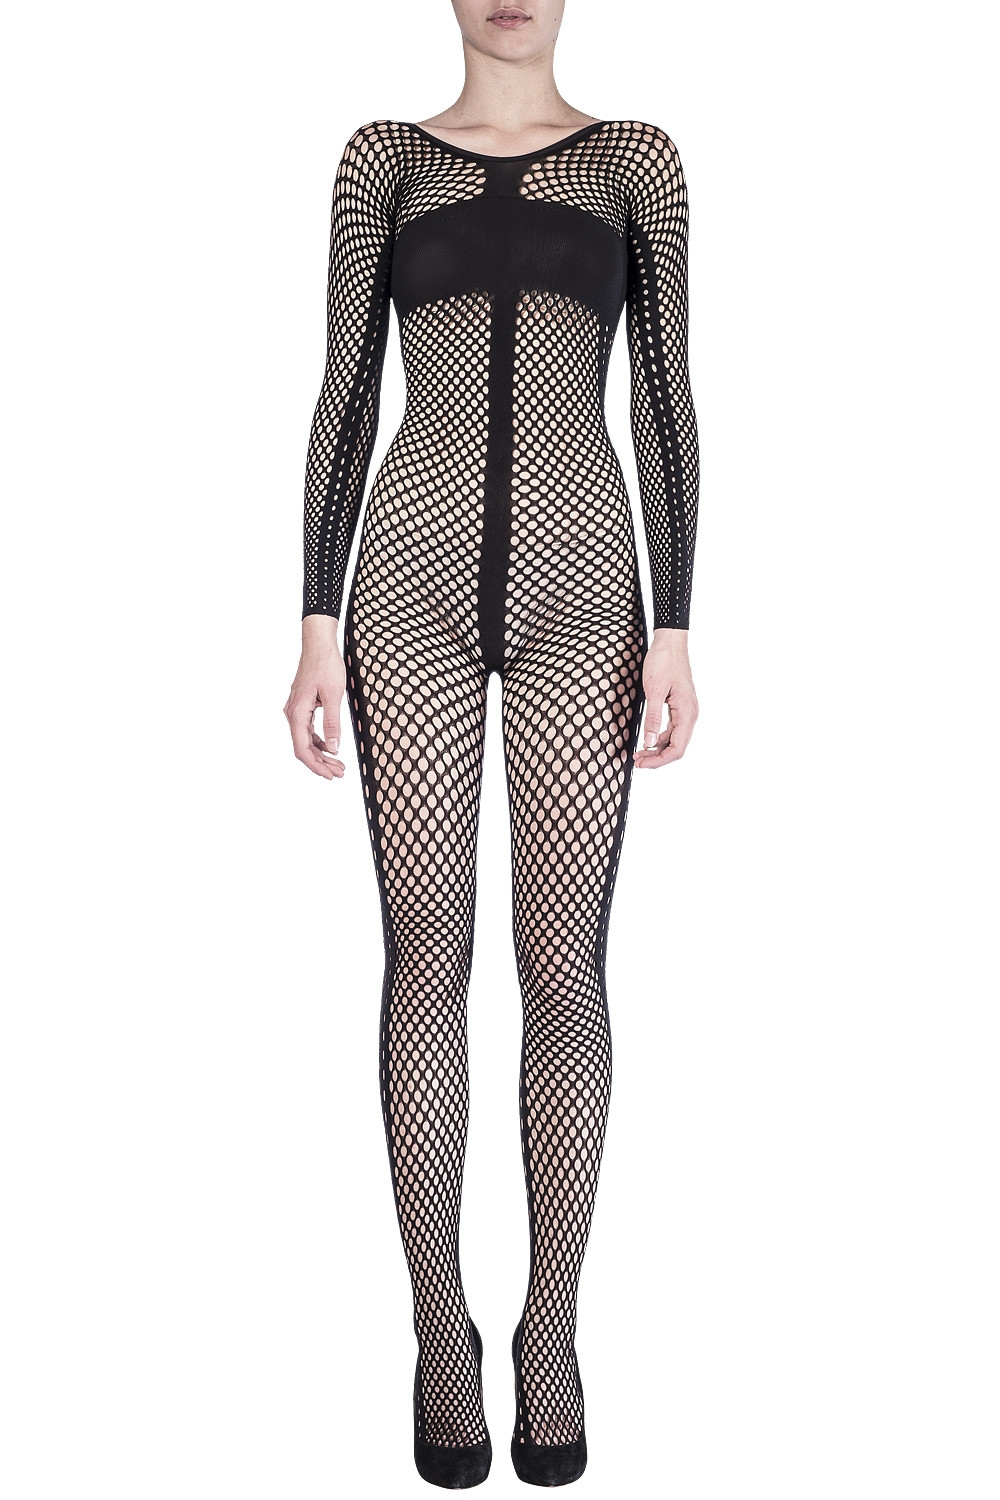 Ladies Slim Fit Long Sleeve Mesh Fishnet Bodysuit Leotard Top UK Plus Size  8-22